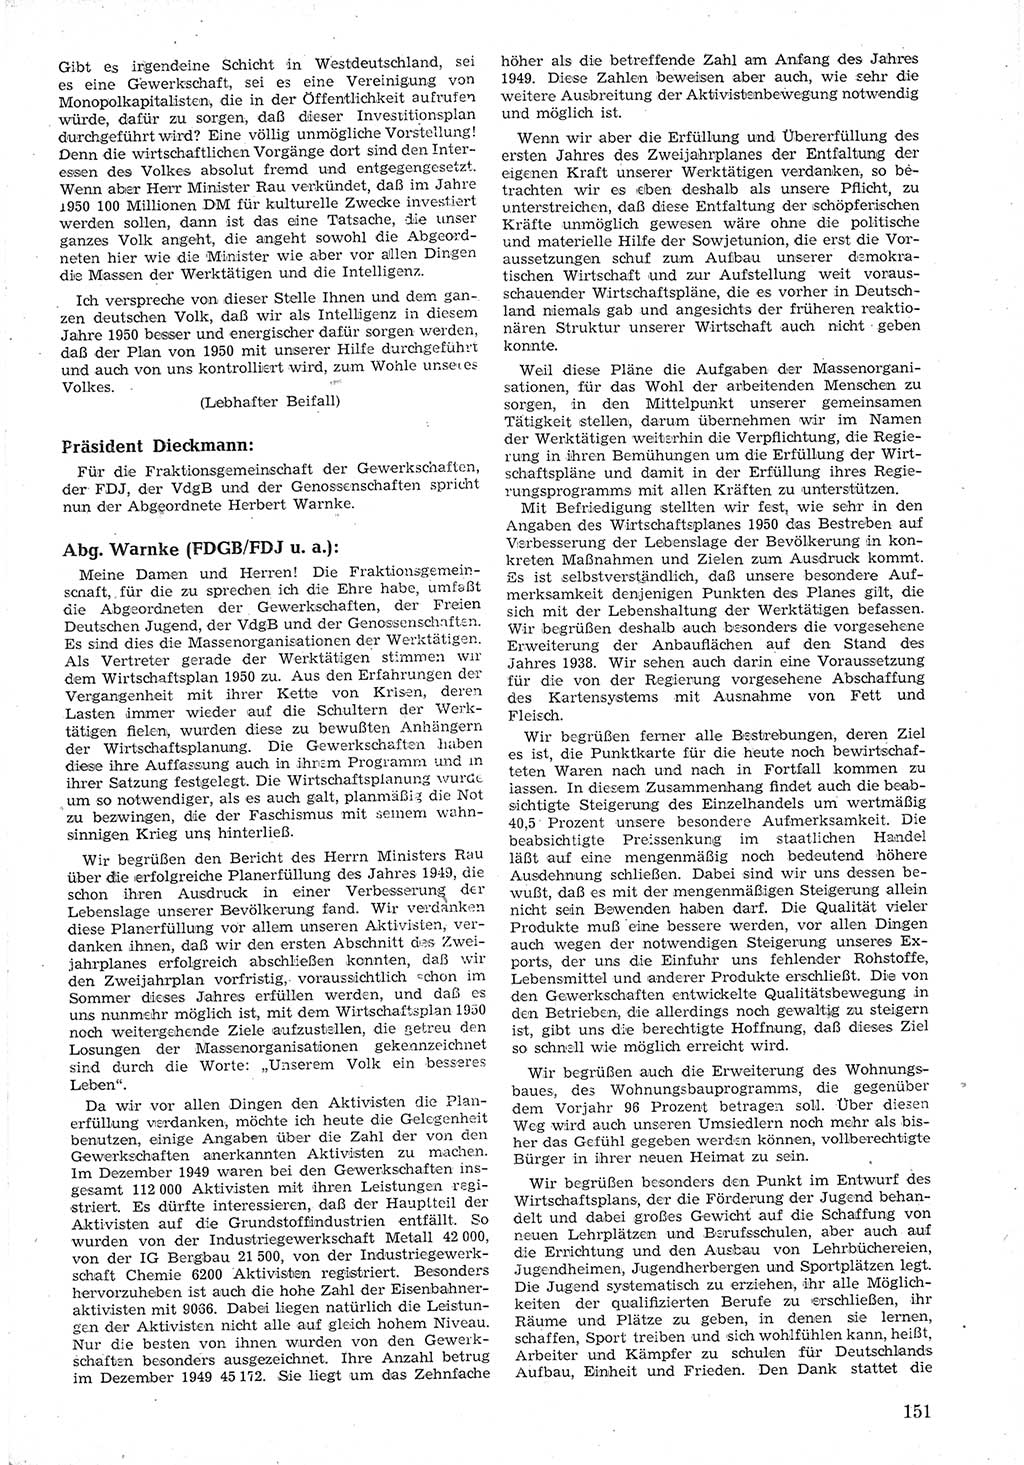 Provisorische Volkskammer (VK) der Deutschen Demokratischen Republik (DDR) 1949-1950, Dokument 163 (Prov. VK DDR 1949-1950, Dok. 163)